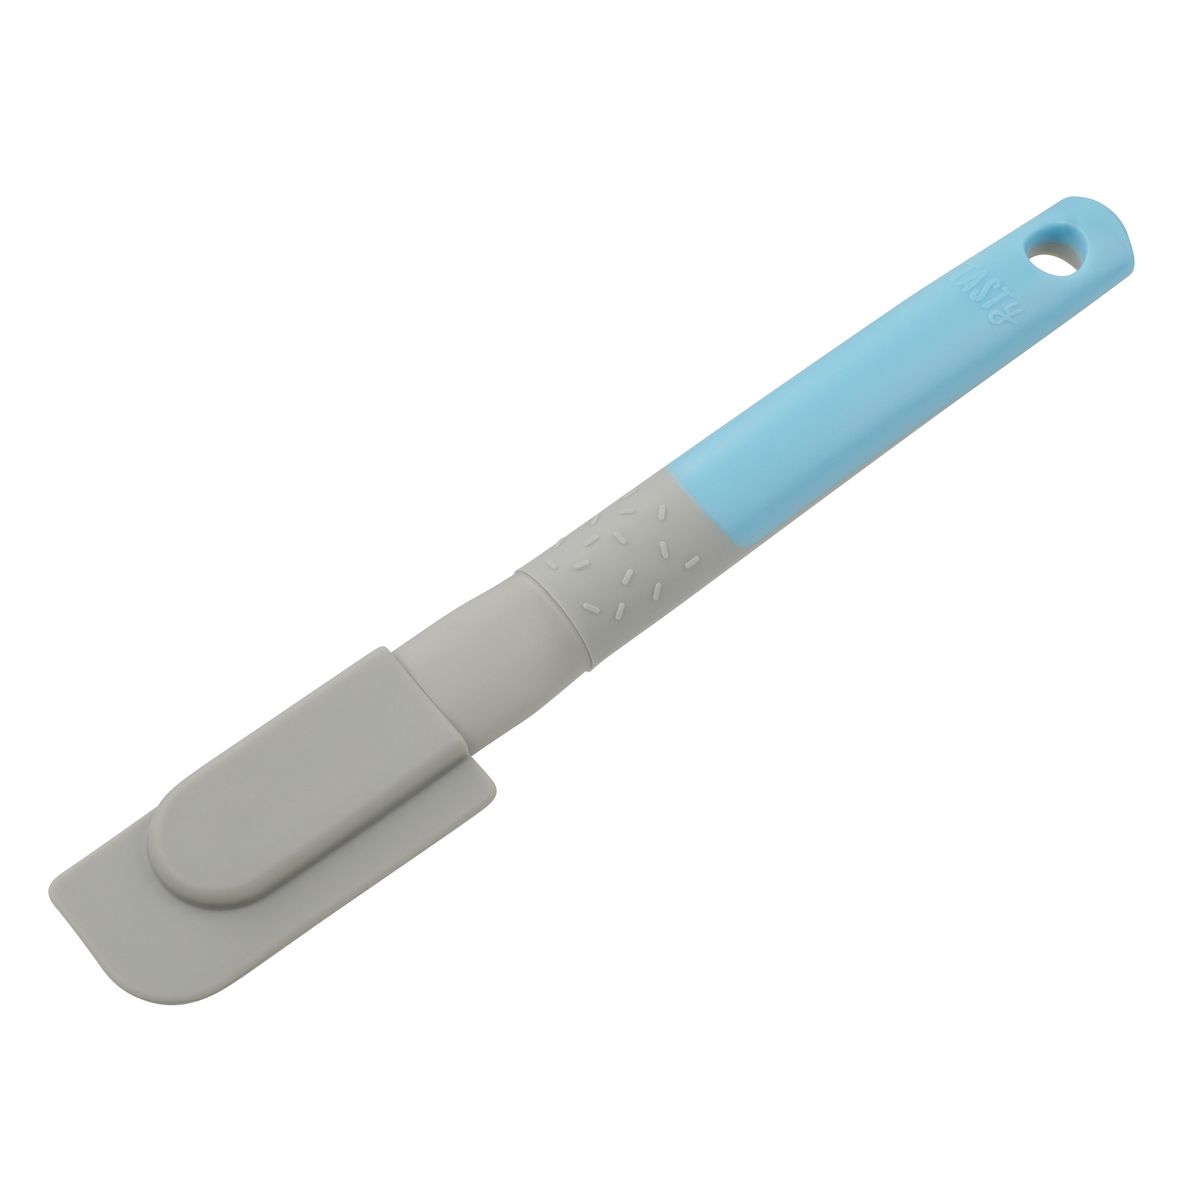 Petite spatule de pâtisserie turquoise en silicone 22,9 cm Tasty Pâtisserie